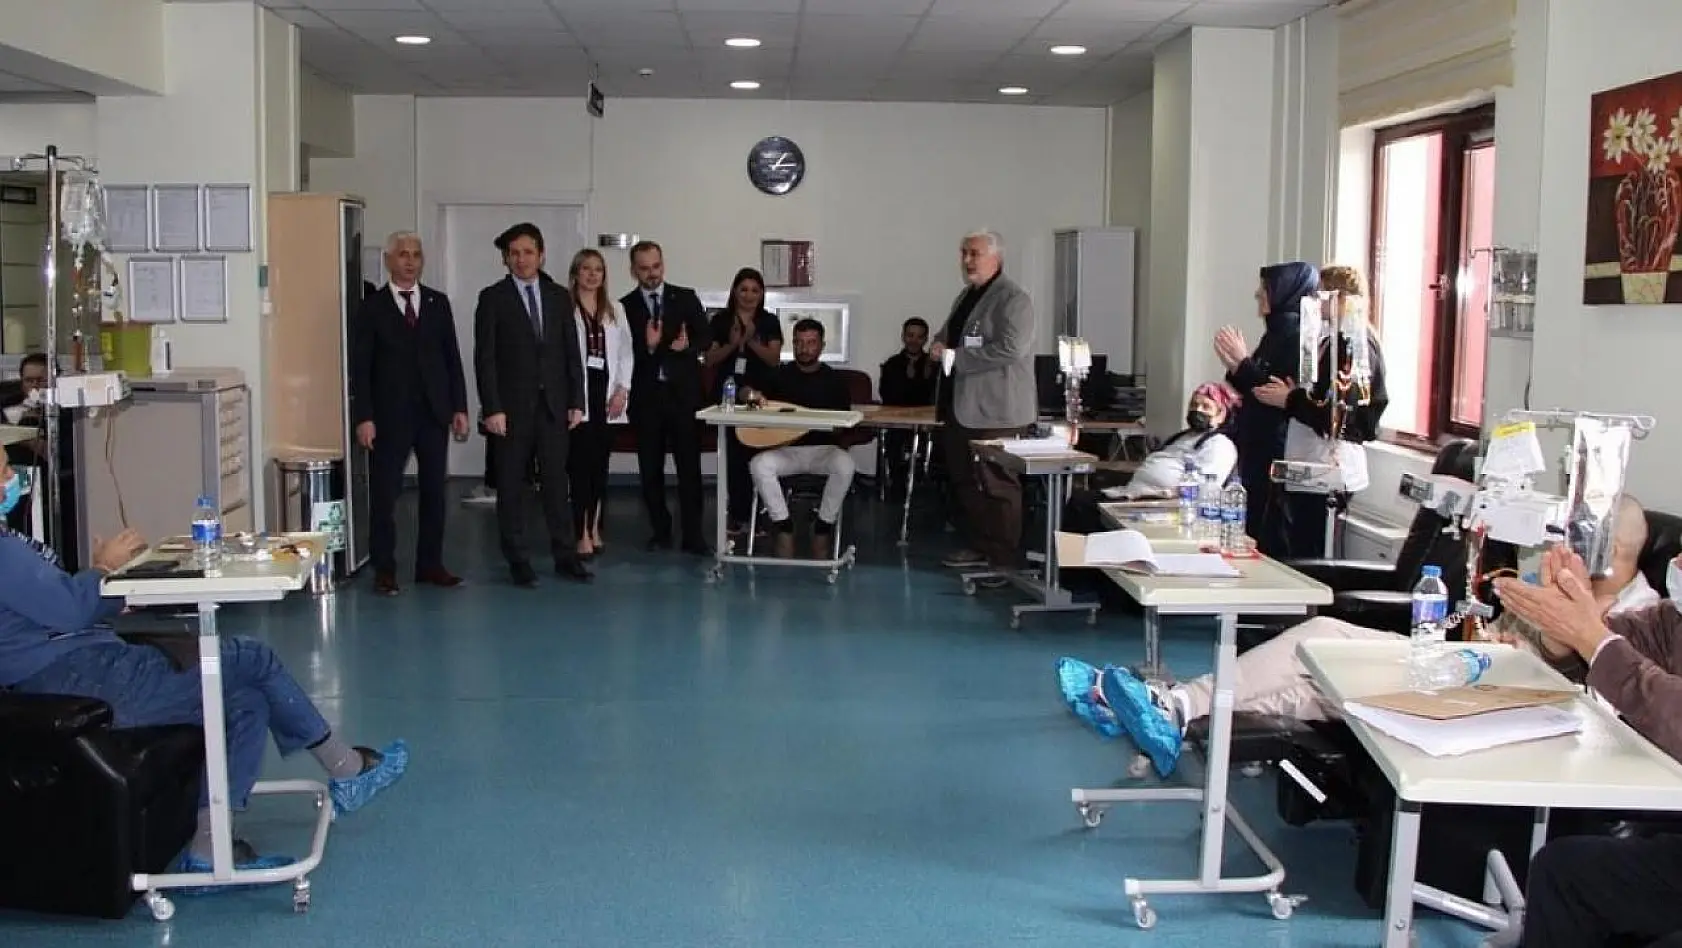 Kütahya Evliya Çelebi Hastanesi'nde hastalara müzik dinletisi